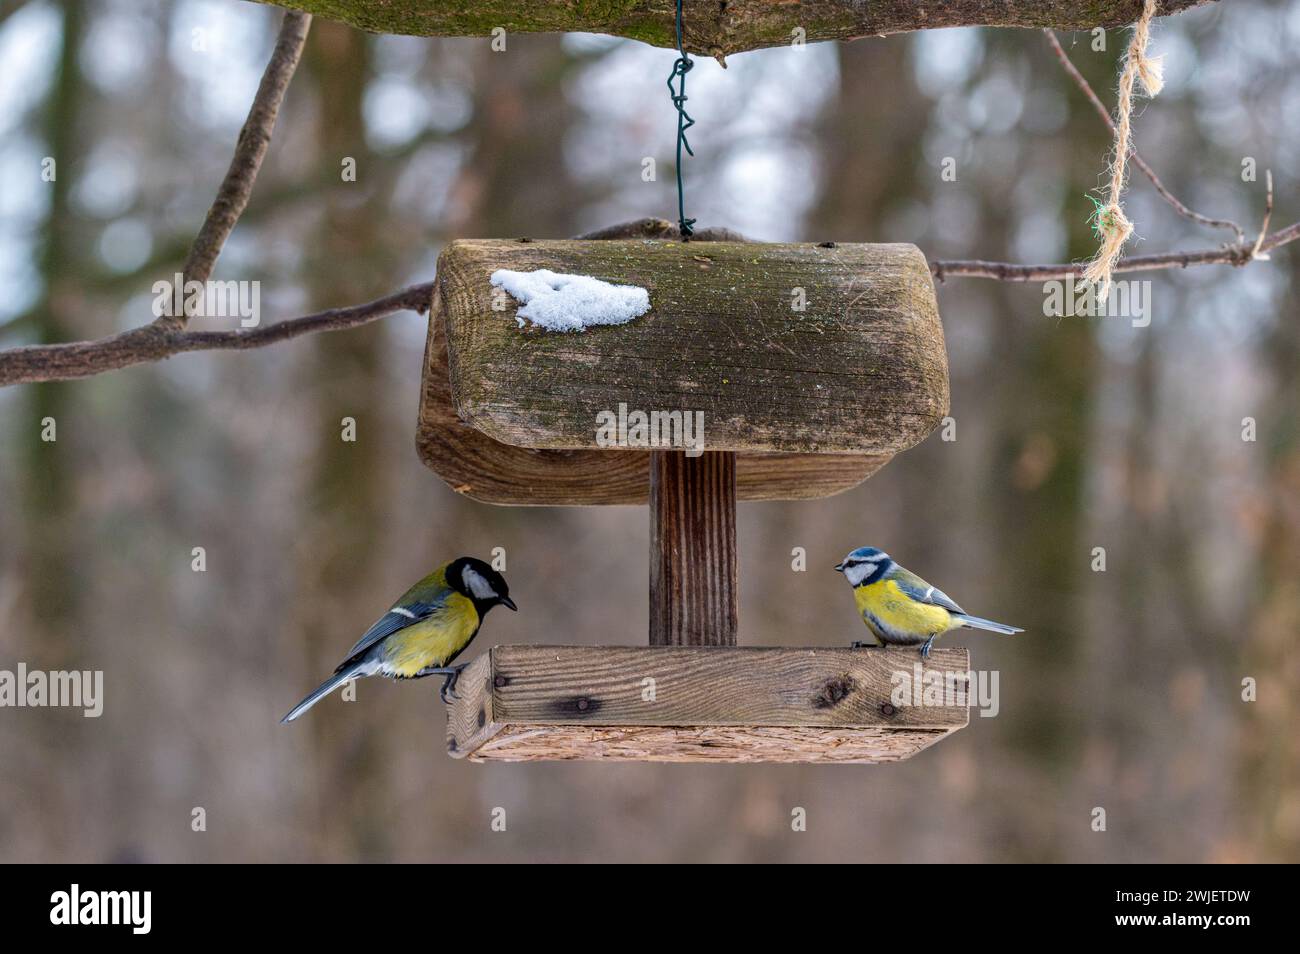 Die beiden Vögel saßen auf einem hölzernen Vogelfutterhäuschen. Parus Major und Cyanistes caeruleus Stockfoto